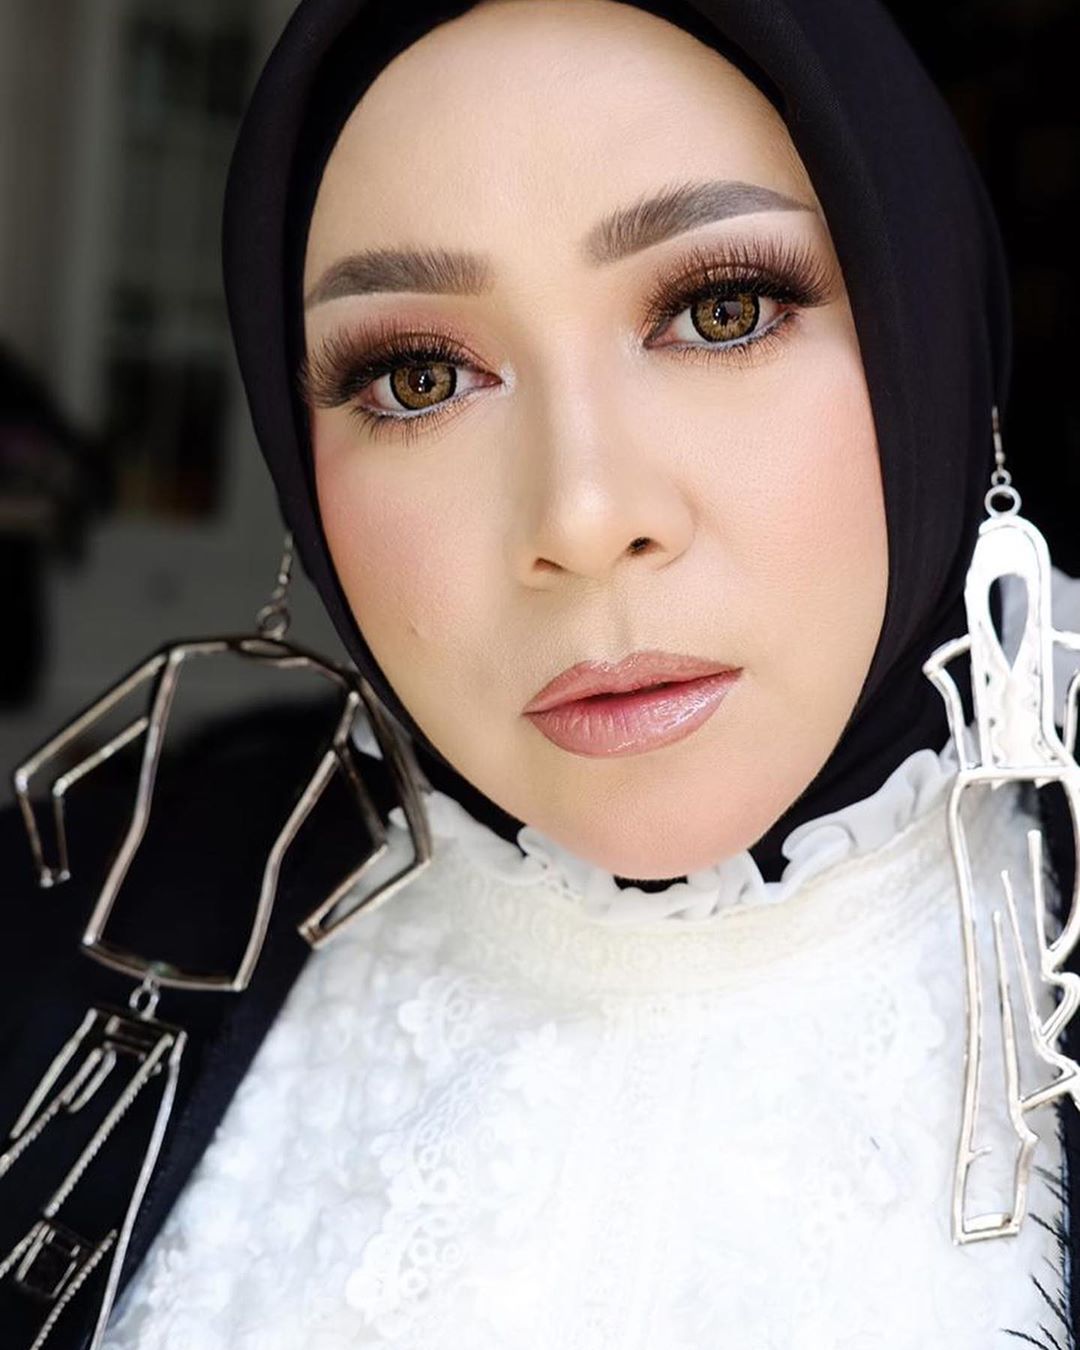 Tampil cantik dan anggun, ini 6 gaya hijab Melly Goeslaw yang menawan